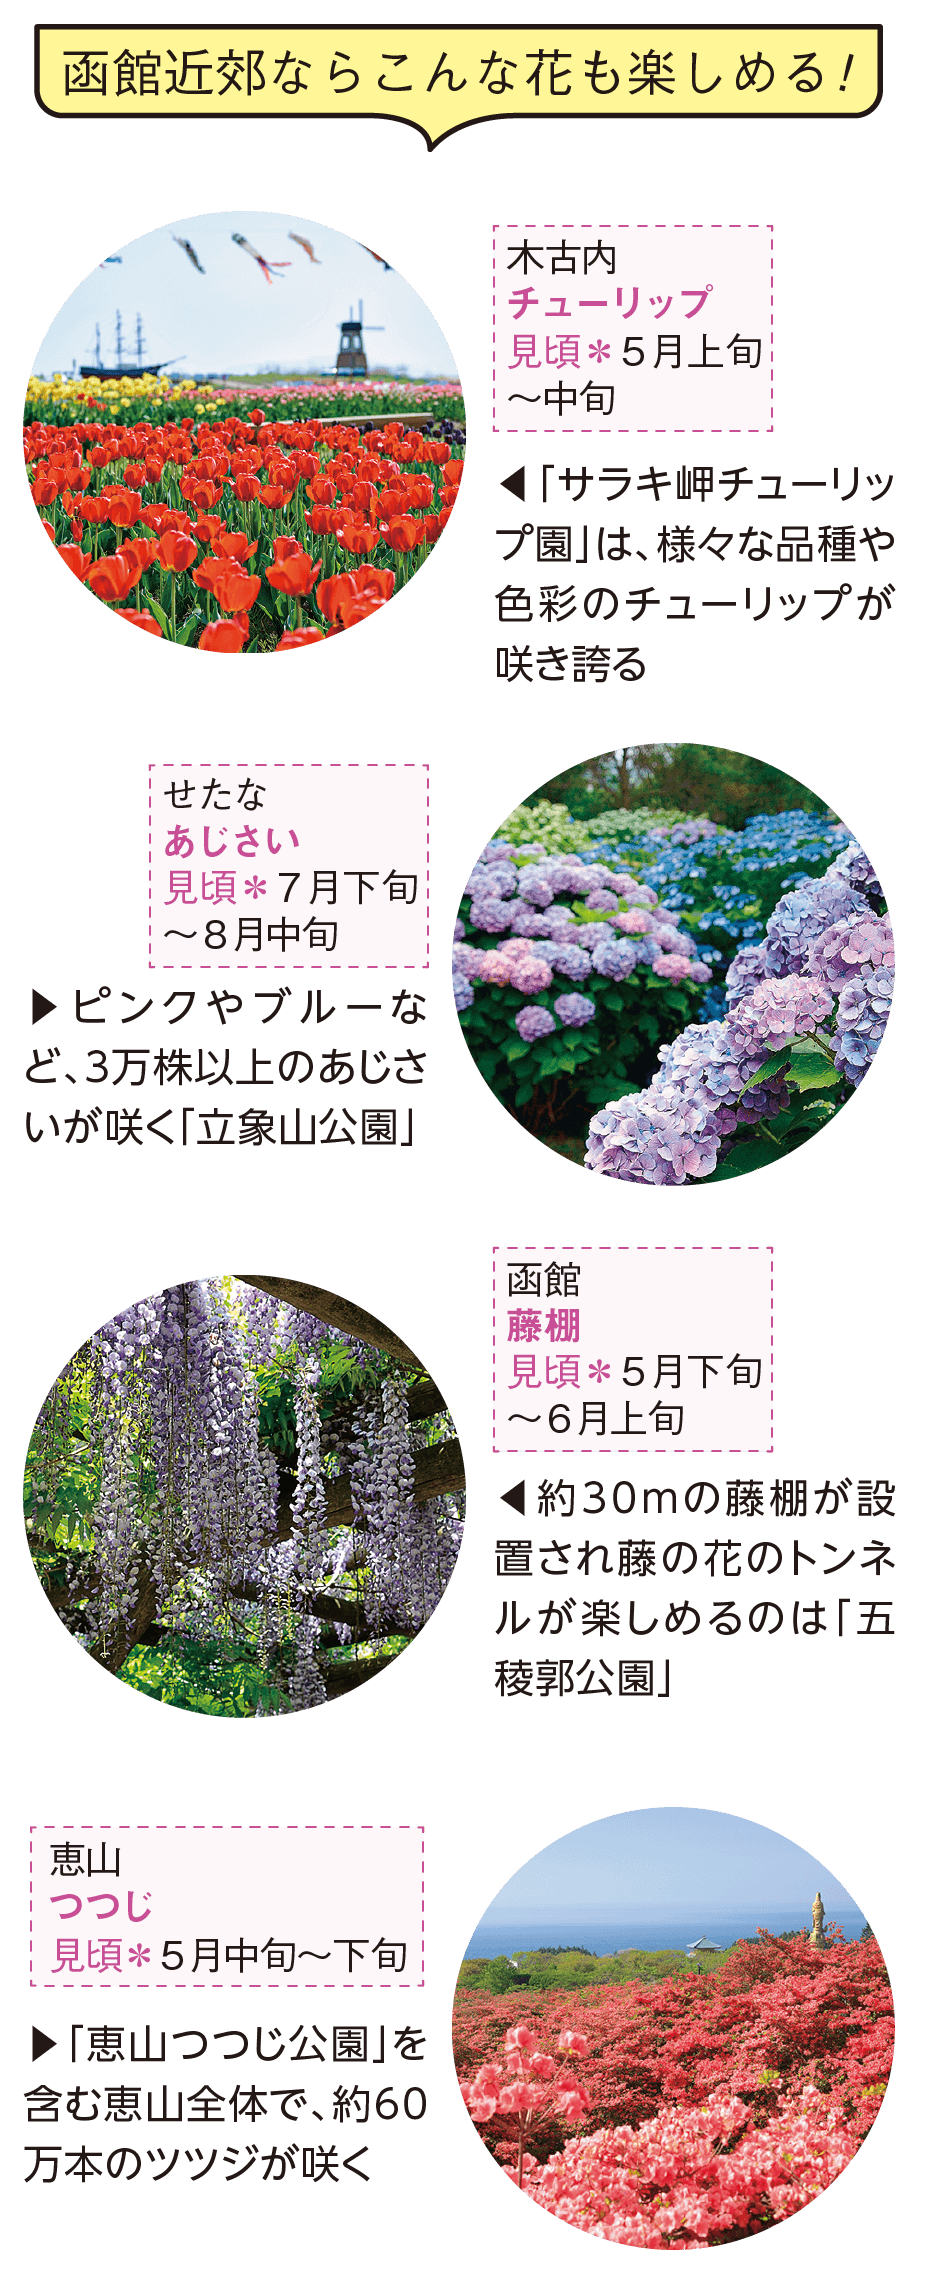 函館近郊ならこんな花も楽しめる! 